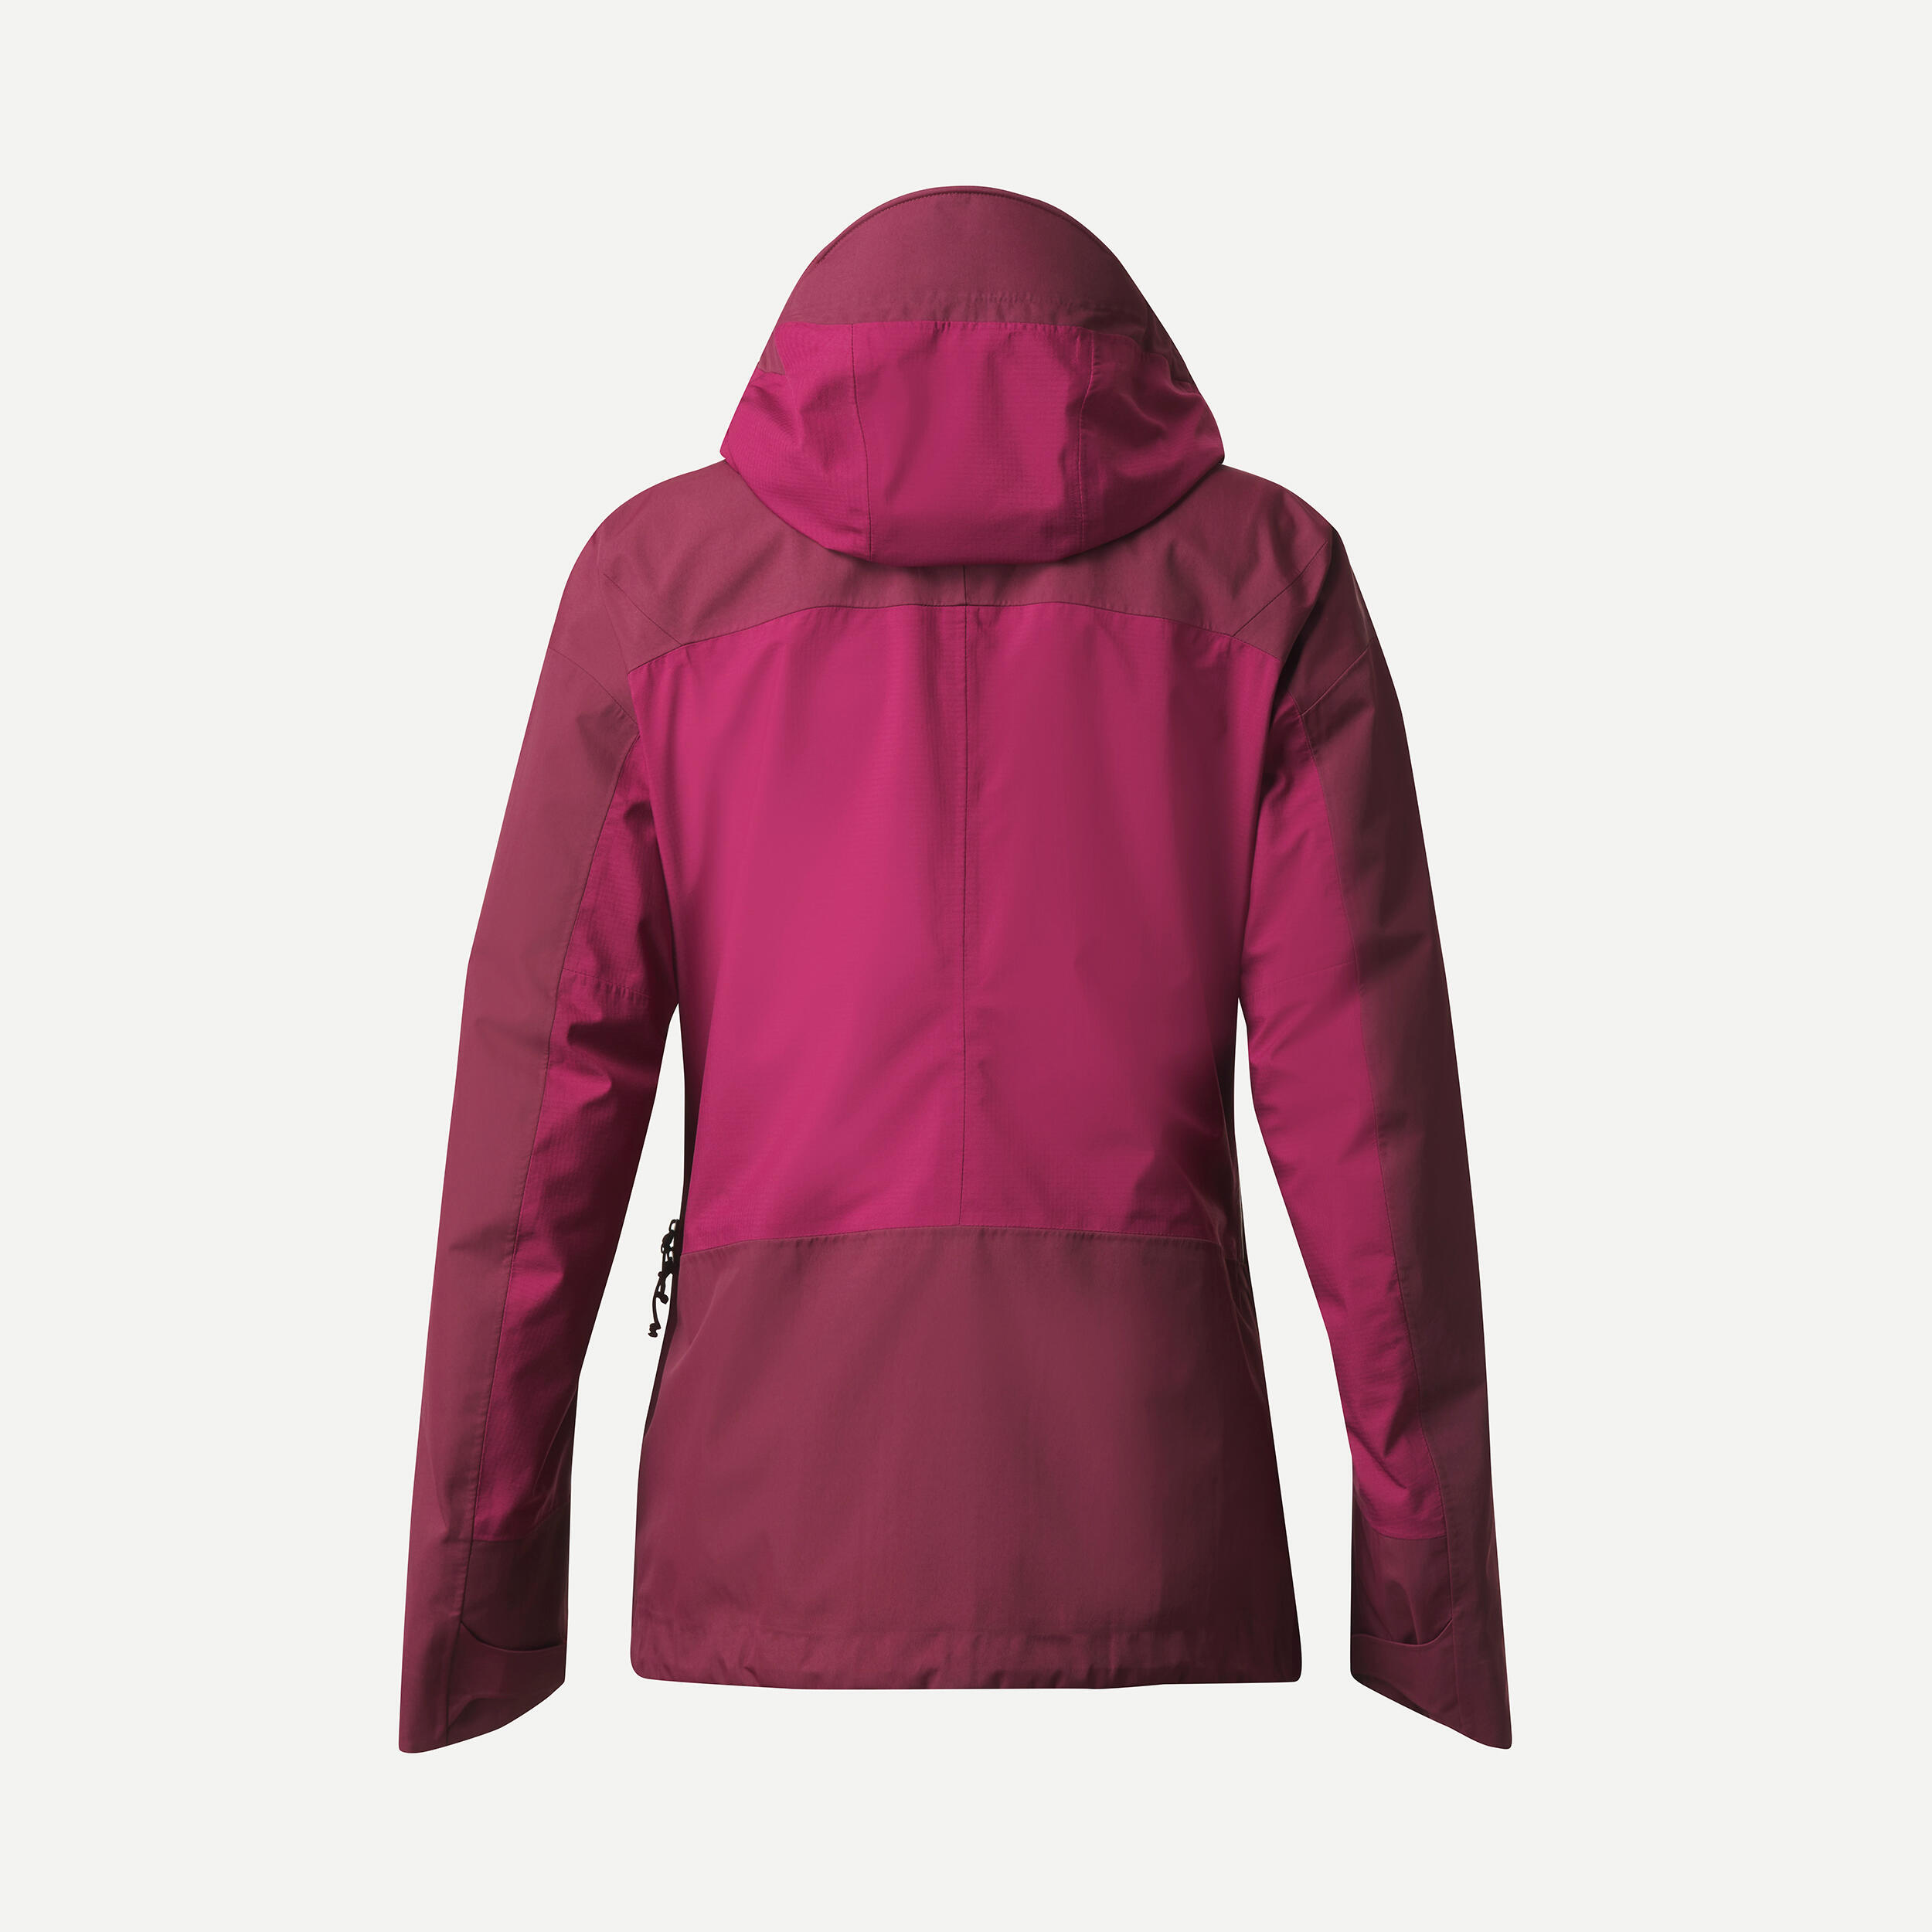 Women’s Waterproof Jacket – 20,000 mm – taped seams - MT500  11/11